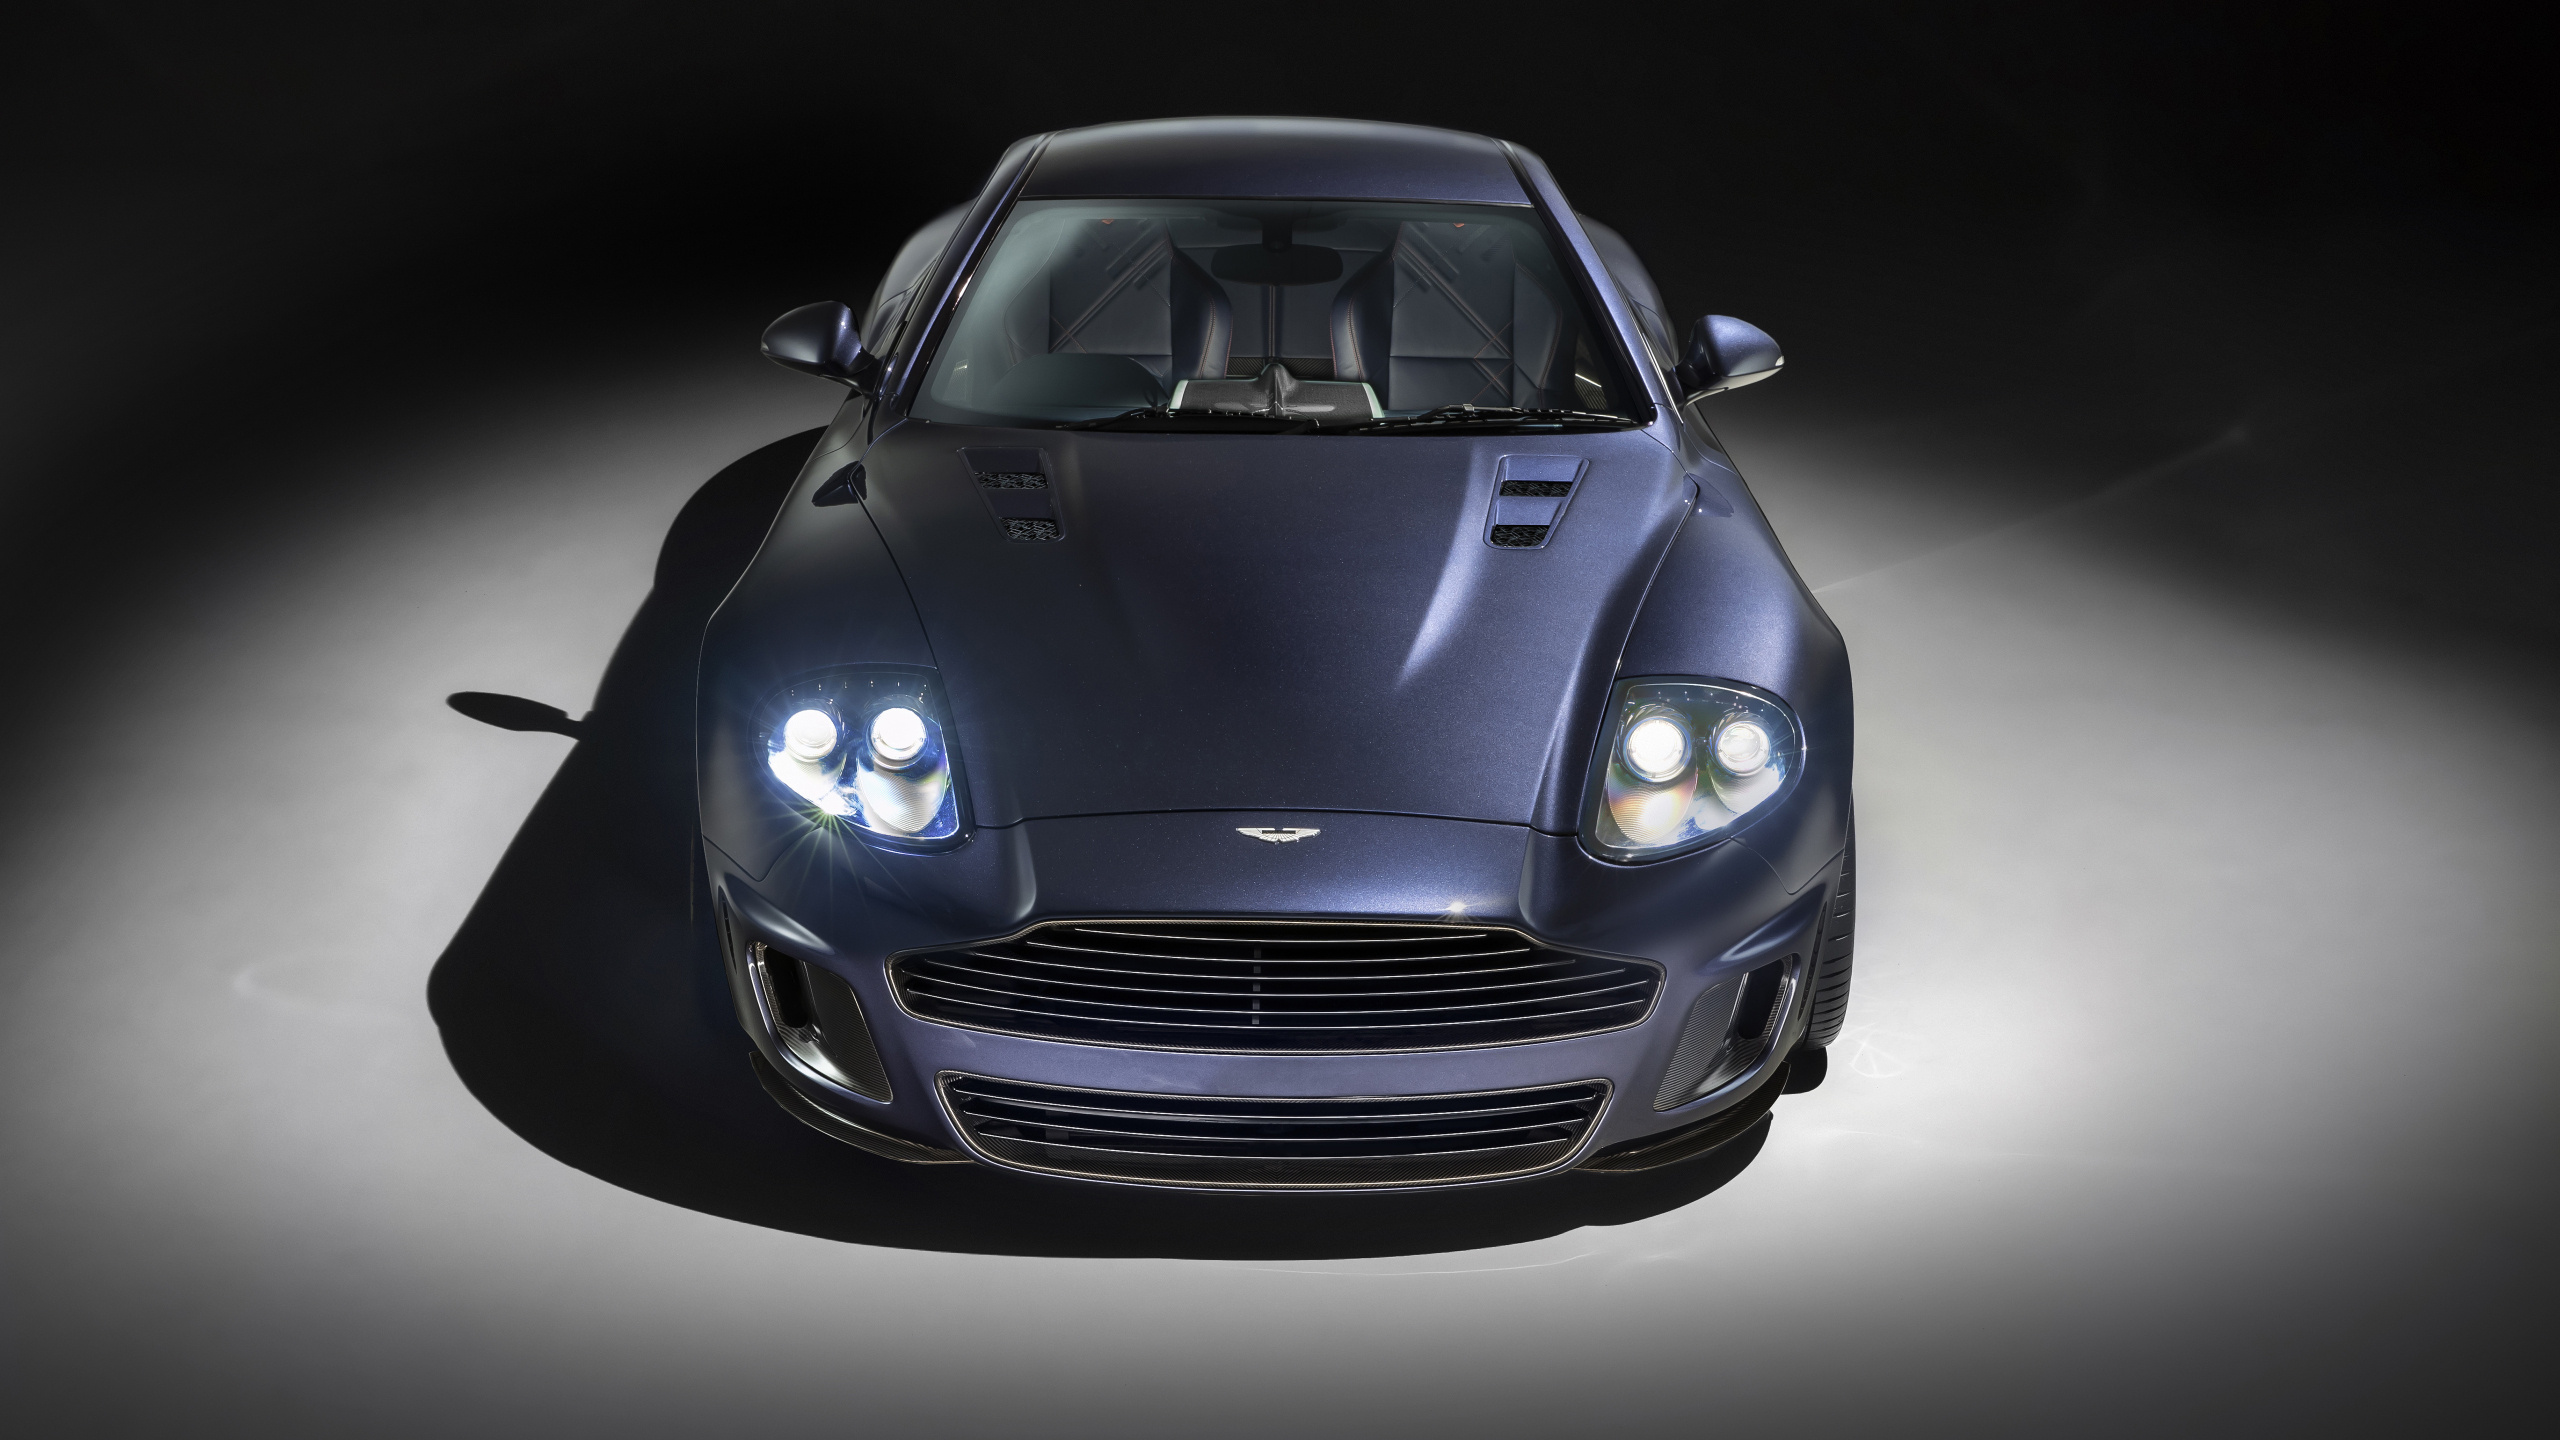 Aston Martin Vanquish, Modernized design, Dual widescreen wallpaper, 2560x1440 HD Desktop